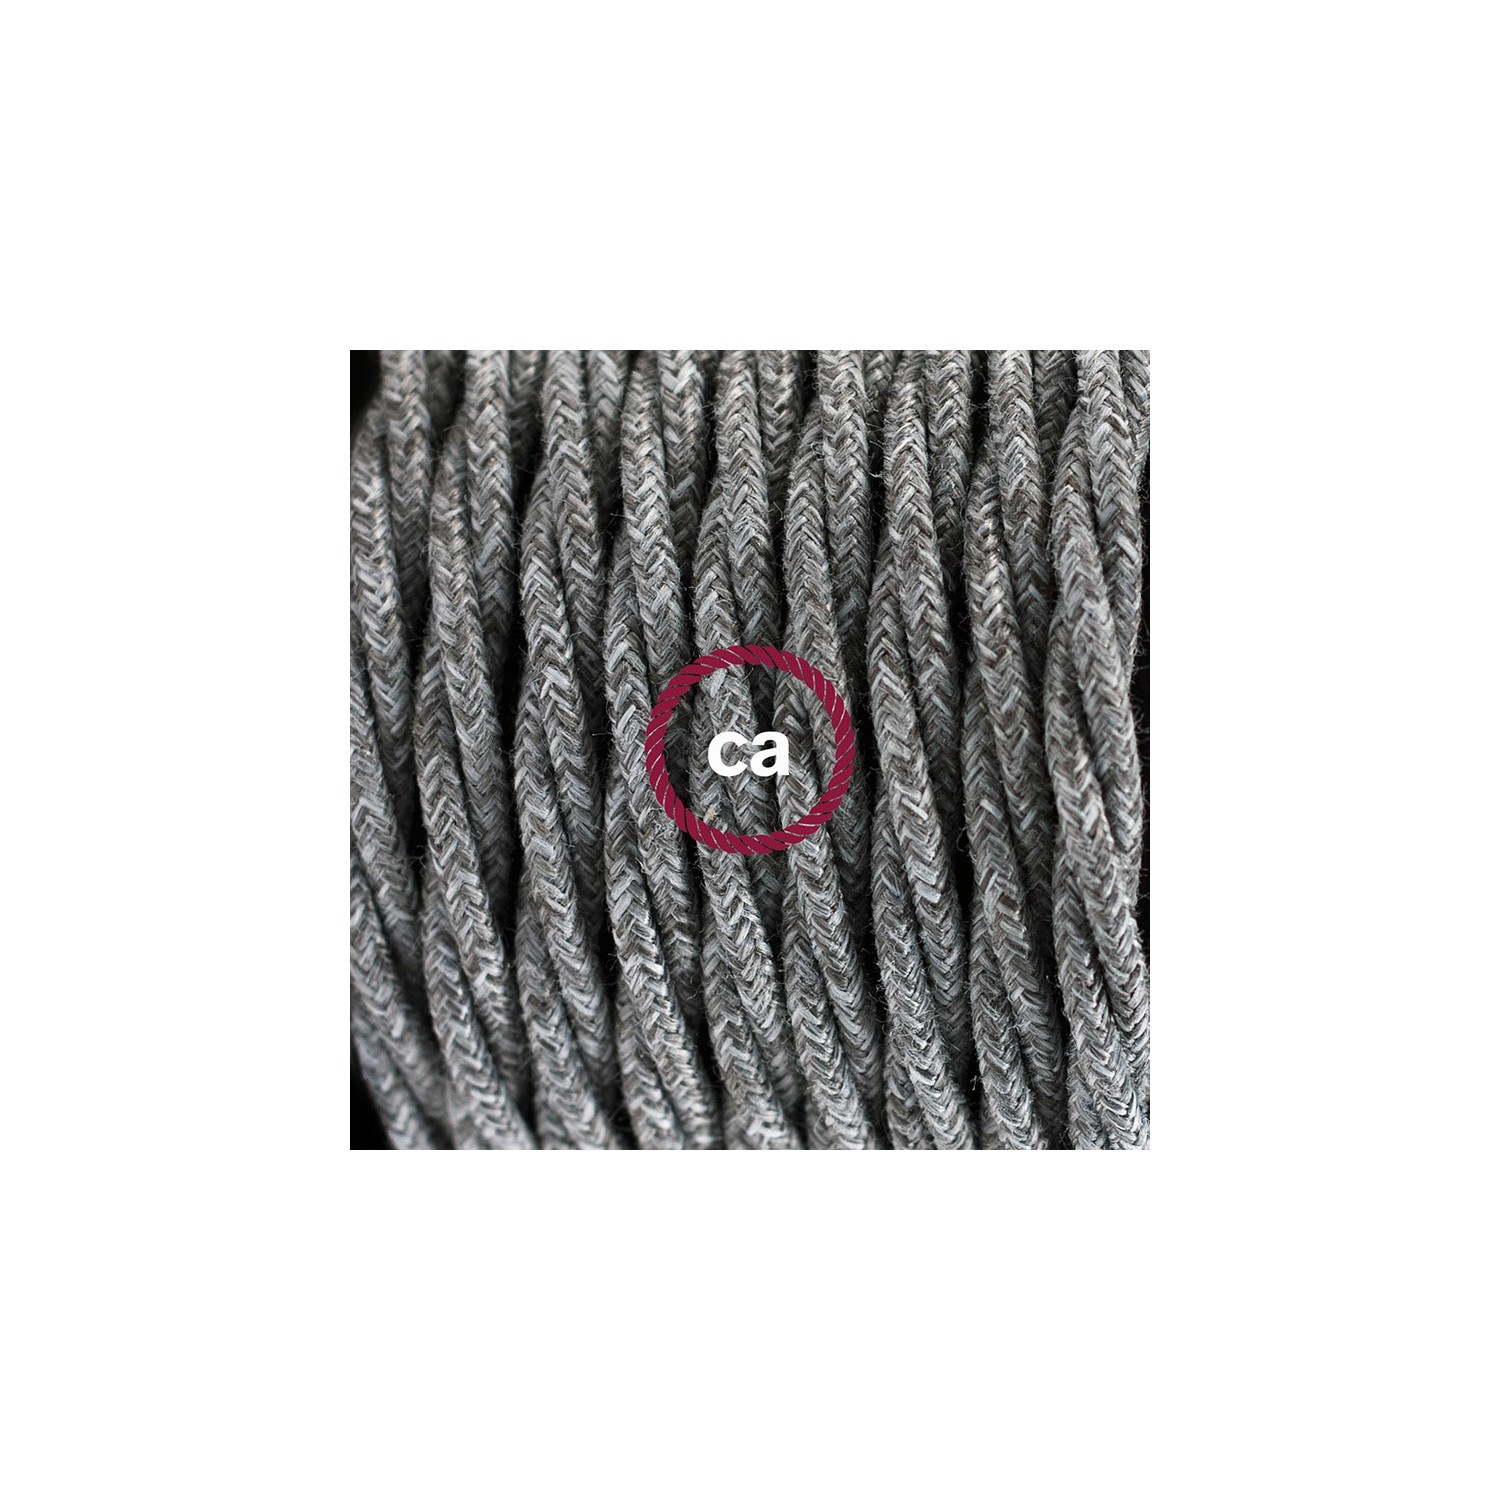 Sladdställ med fotströmbrytare, TN02 Grå Naturligt linne 3 m. Välj färg på strömbrytare och kontakt